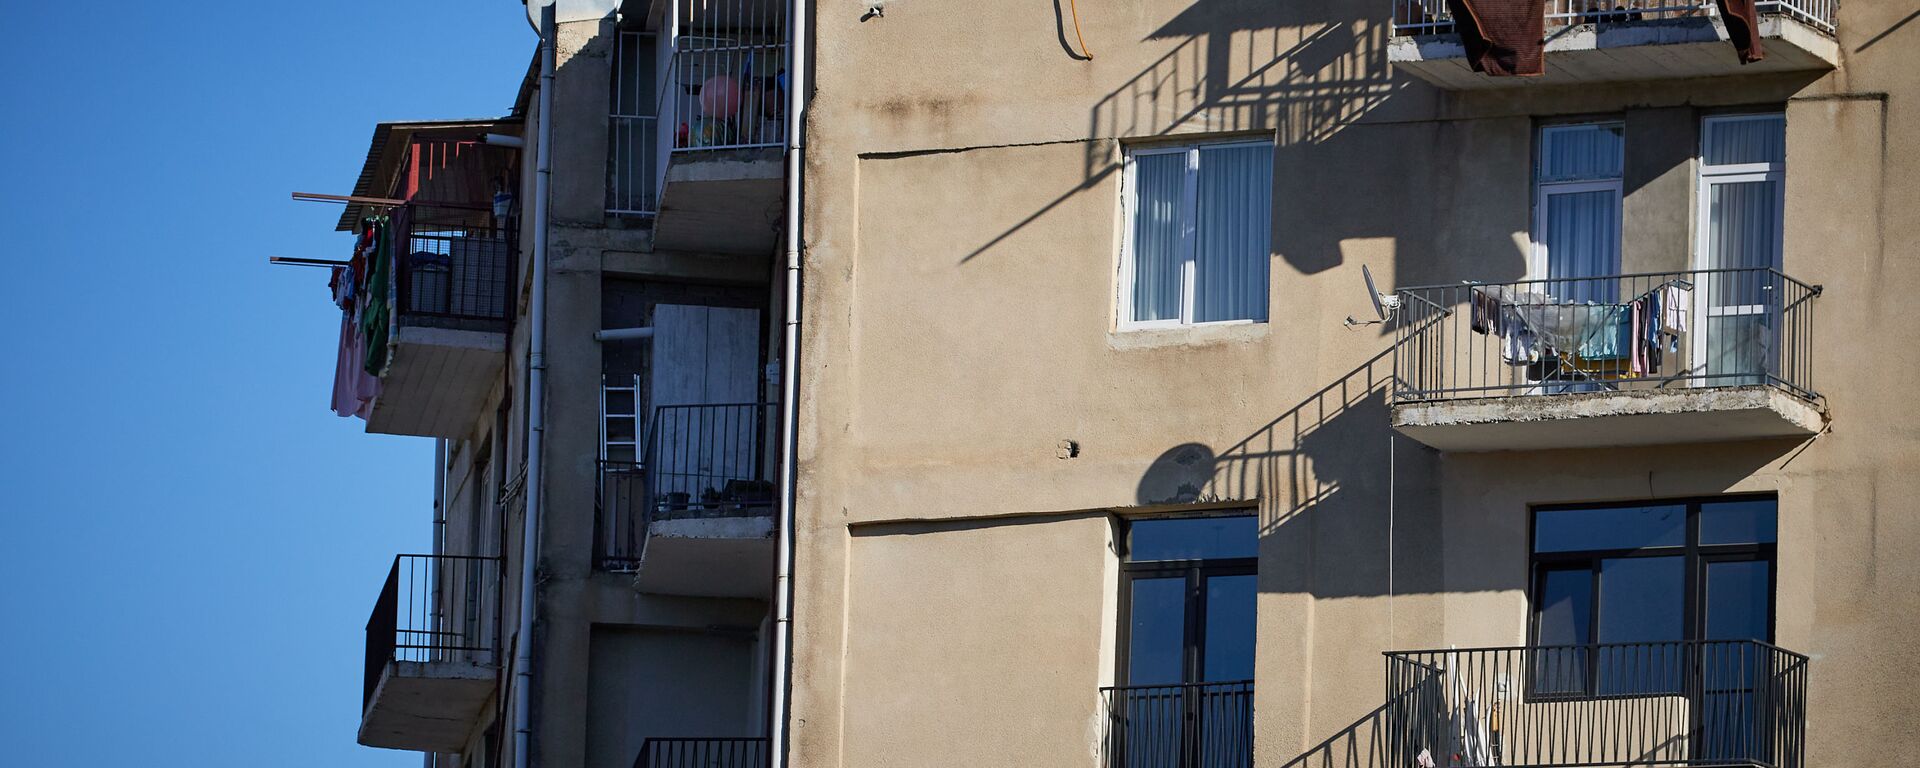 Жилой многоэтажный корпус в столице - решетки на балконе на последнем этаже - Sputnik Грузия, 1920, 08.04.2021